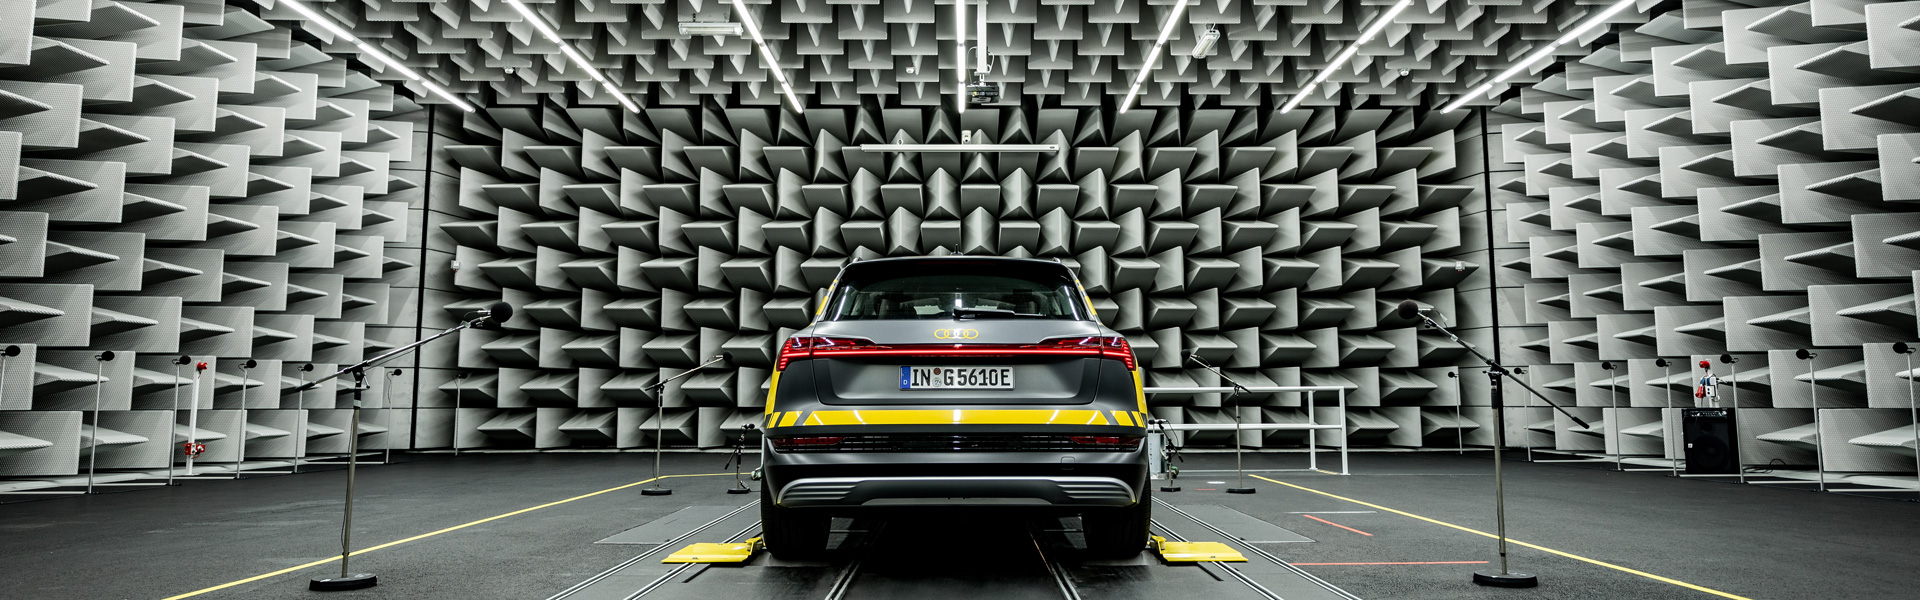 Audi avtomobil v srebrni zvočno izolirani sobi, obrkožen s mikrofoni za snemanje zvoka